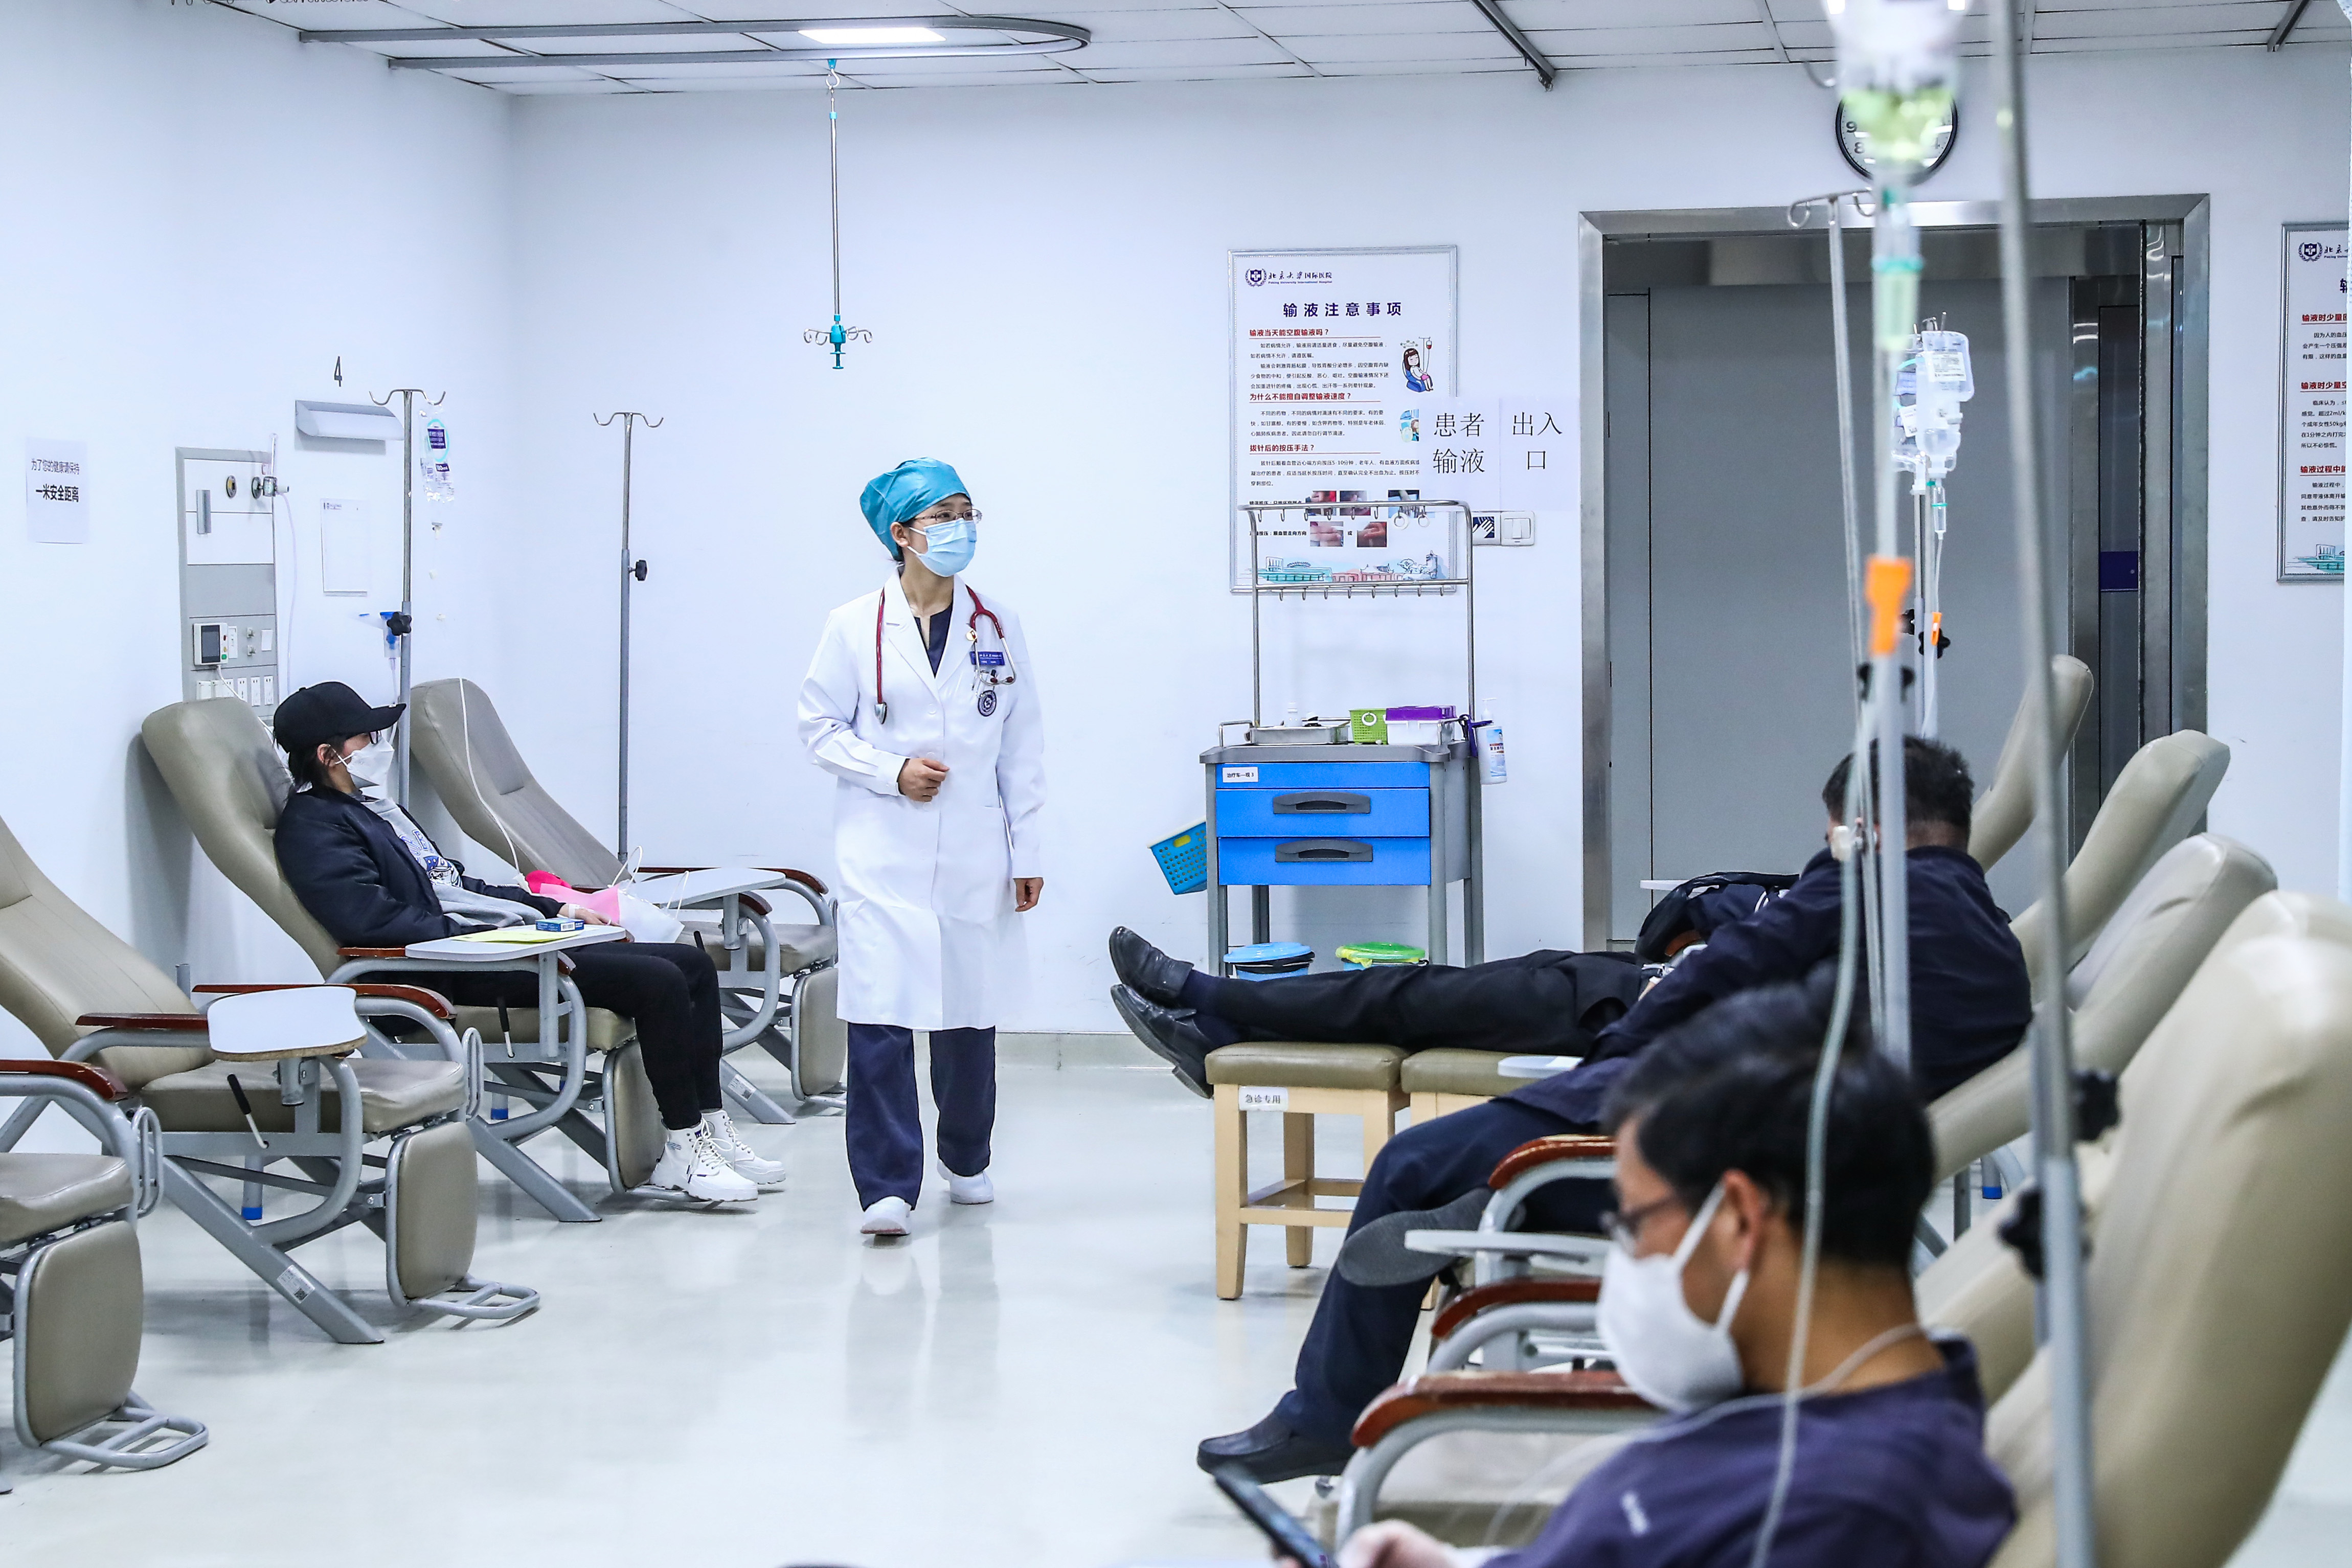 付雪莹在北京大学国际医院急诊科查看输液室病人的情况(4月28日摄).